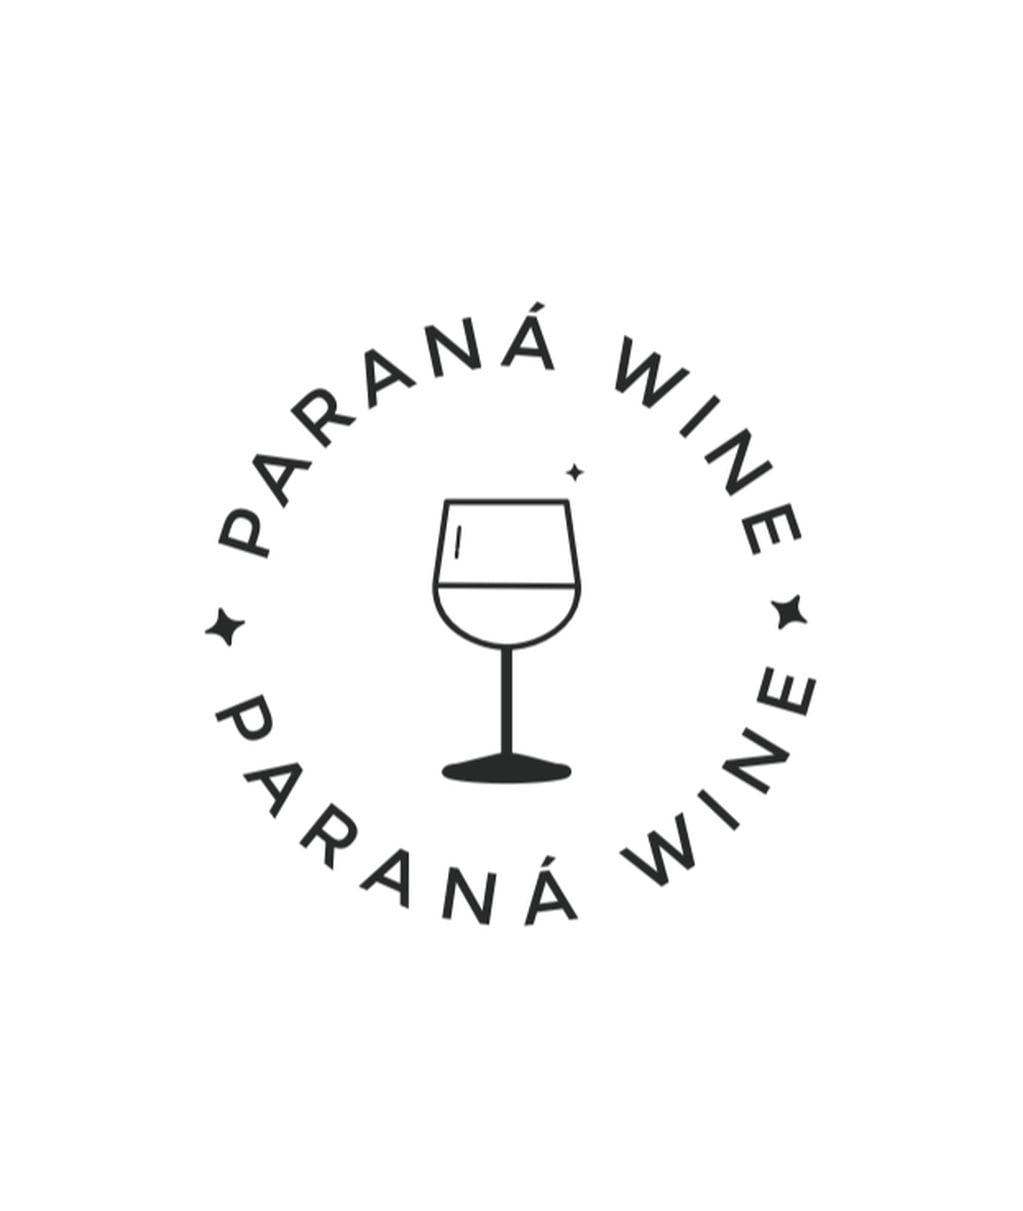 Paraná Wine.